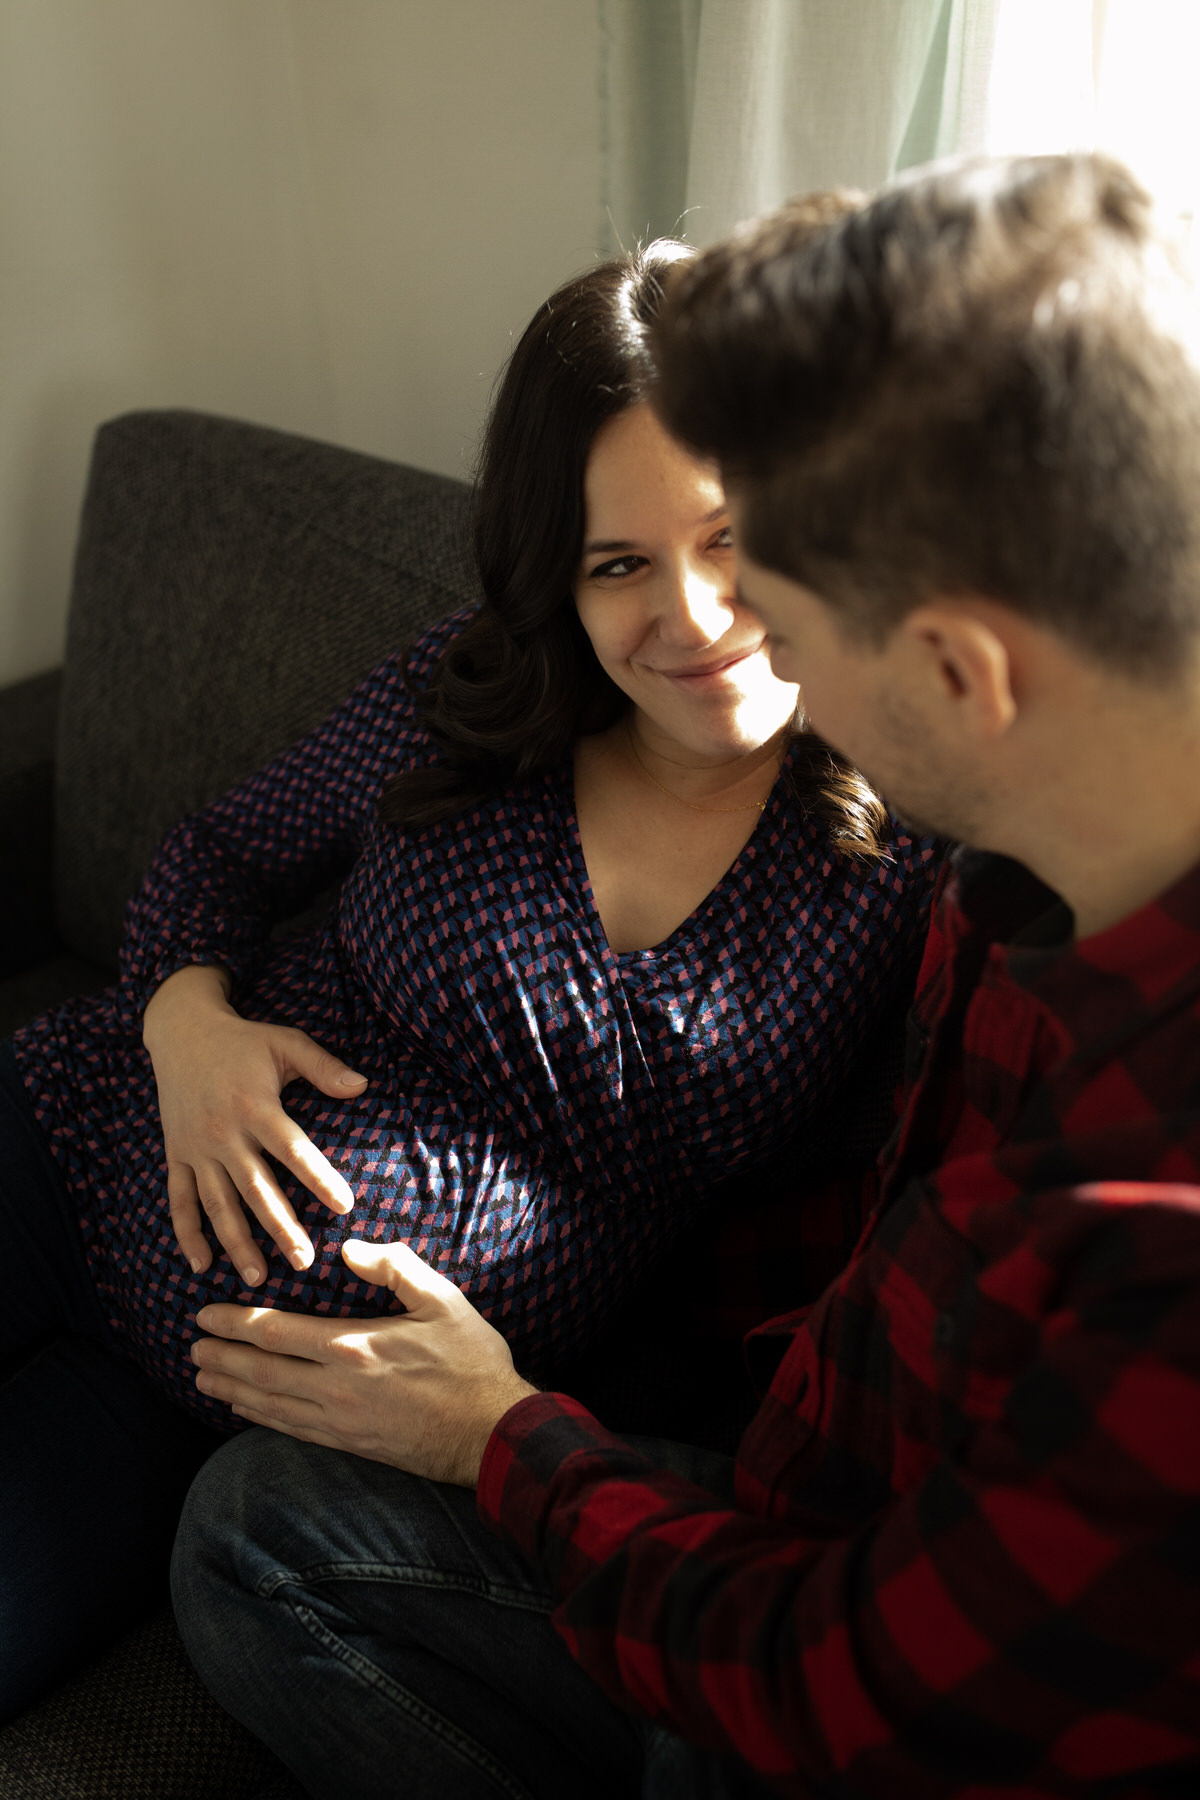 Séance photo couple grossesse dans l'attente de jumeaux à domicile